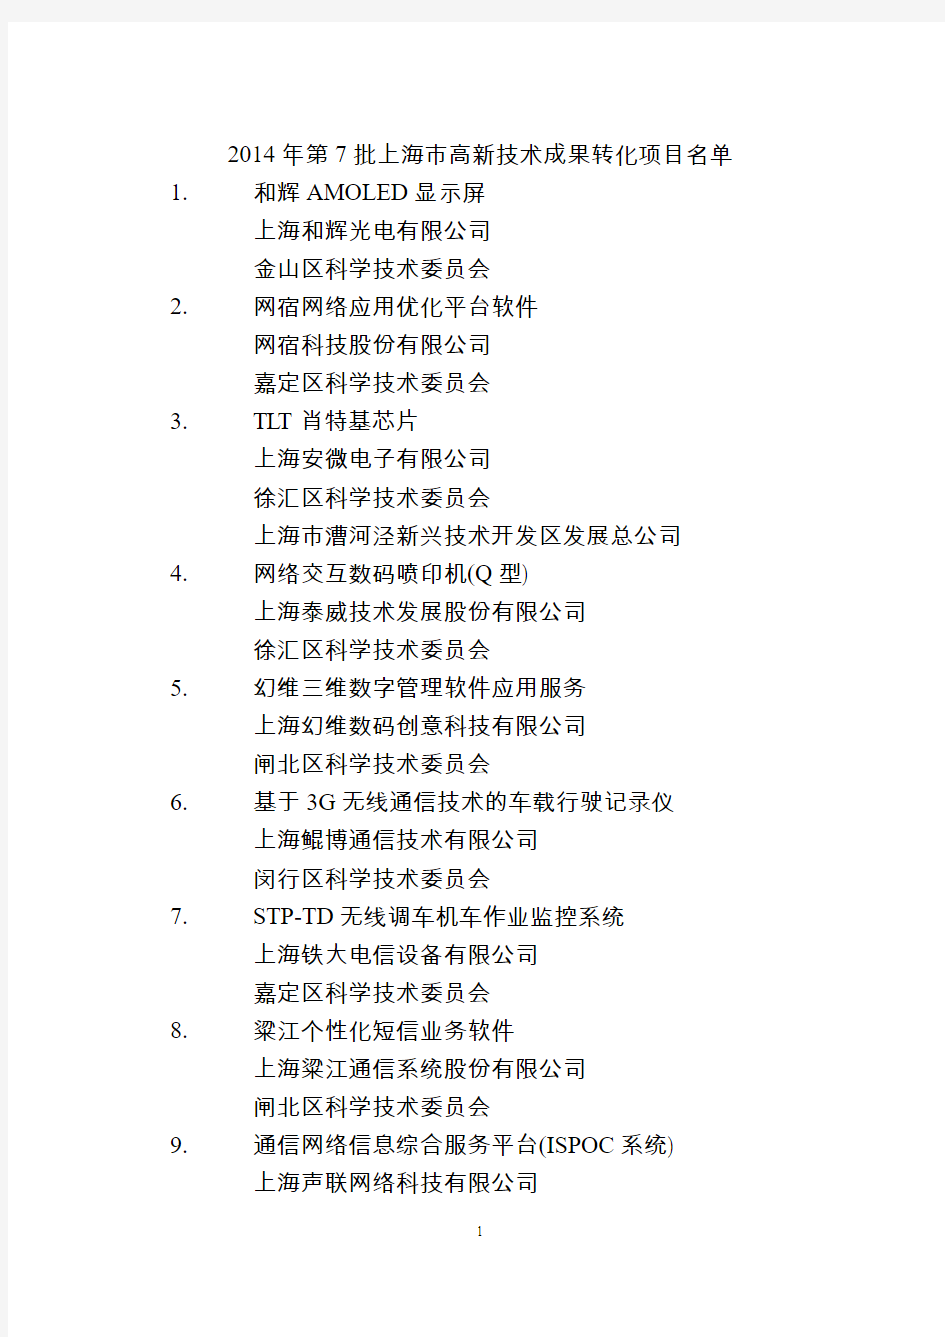 2014 年第 7 批上海市高新技术成果转化项目名单